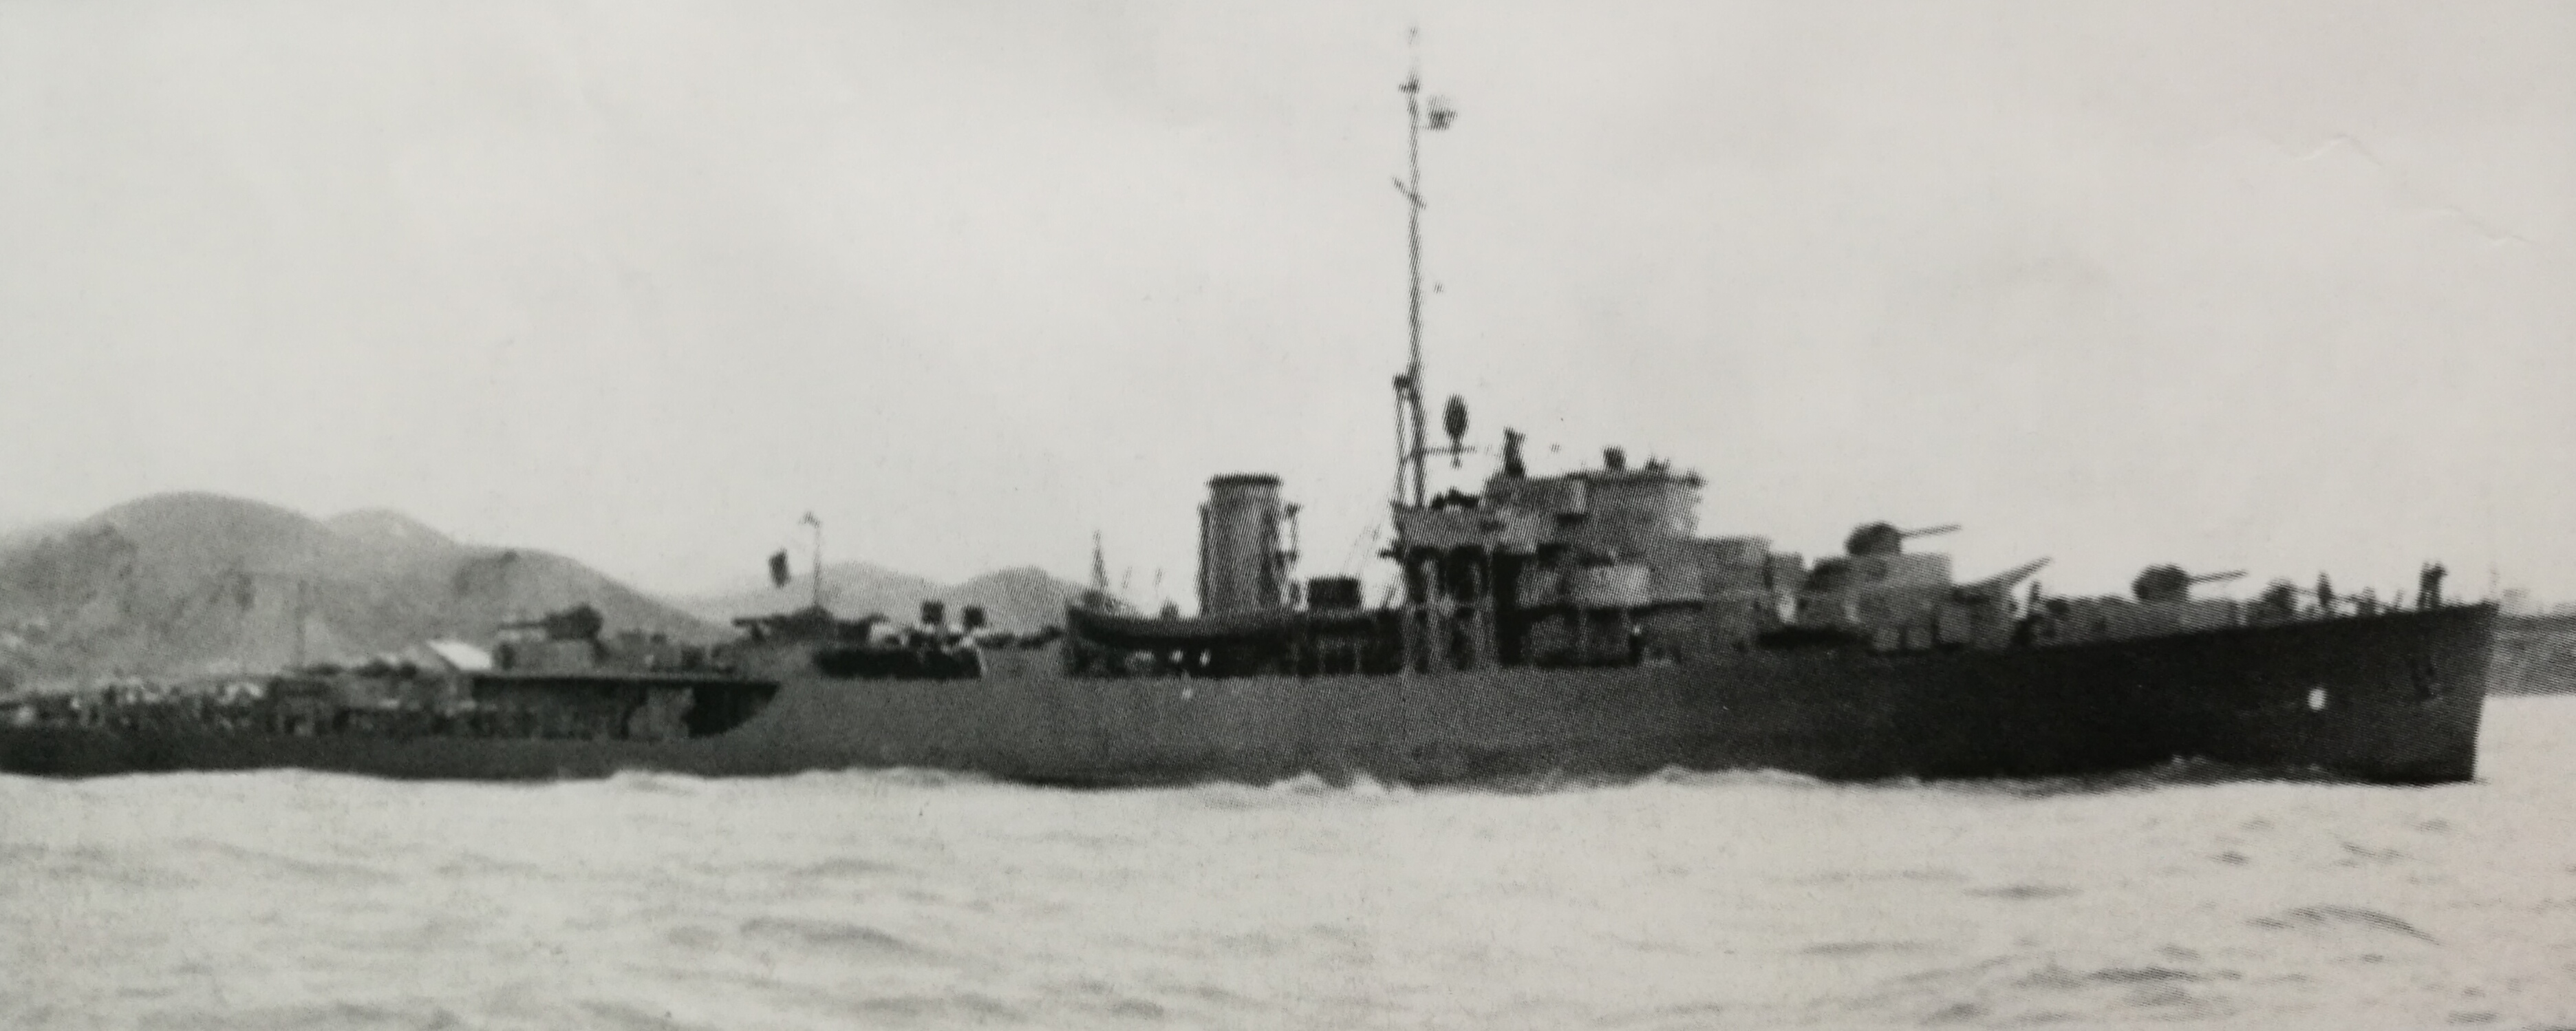 桐號，前身為美軍護衛艦“埃弗里特”號